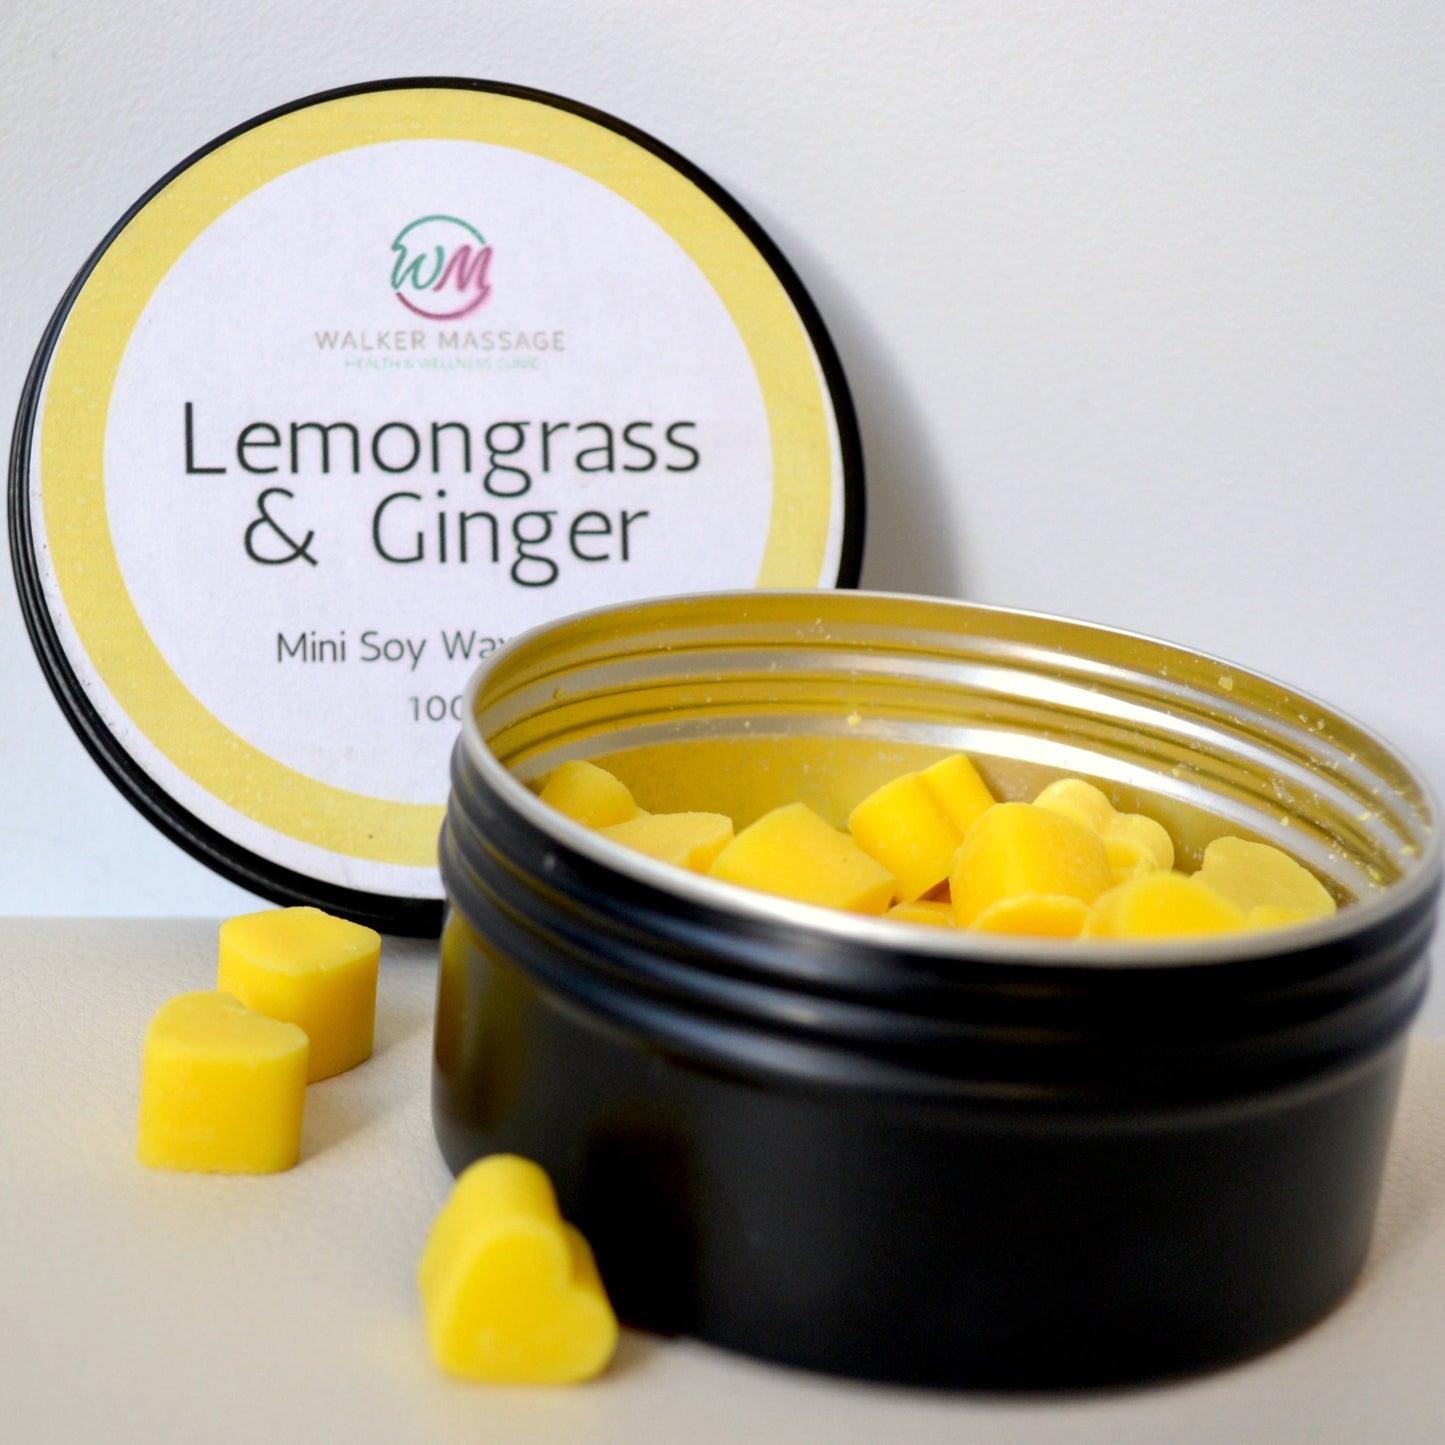 Lemongrass & Ginger Wax Melt Hearts Tin - 100g